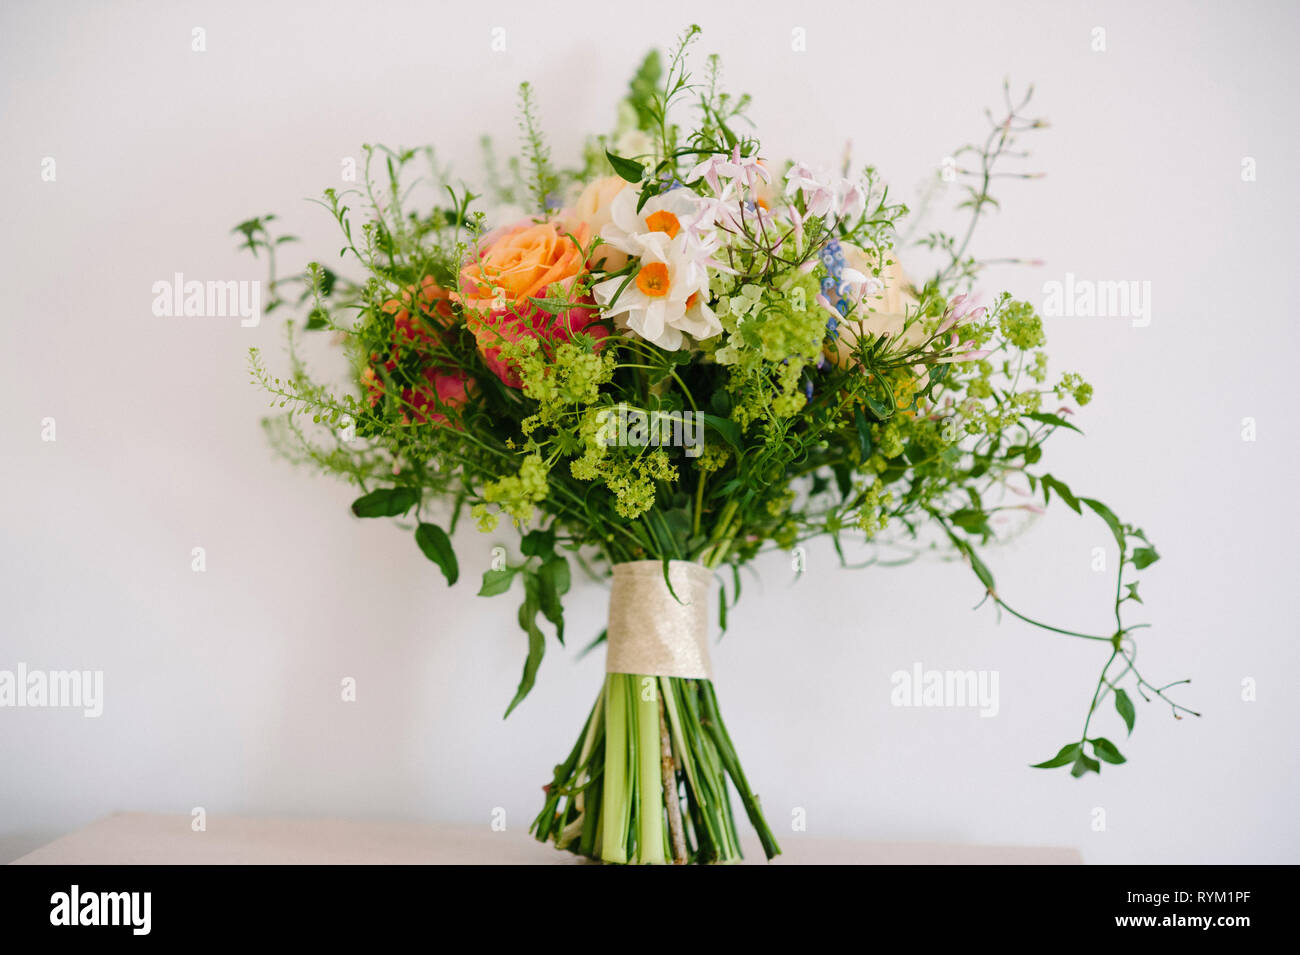 Eine hübsche rustikale Hochzeit Blumenstrauß mit Pastellfarben auf einen einfachen Hintergrund Stockfoto